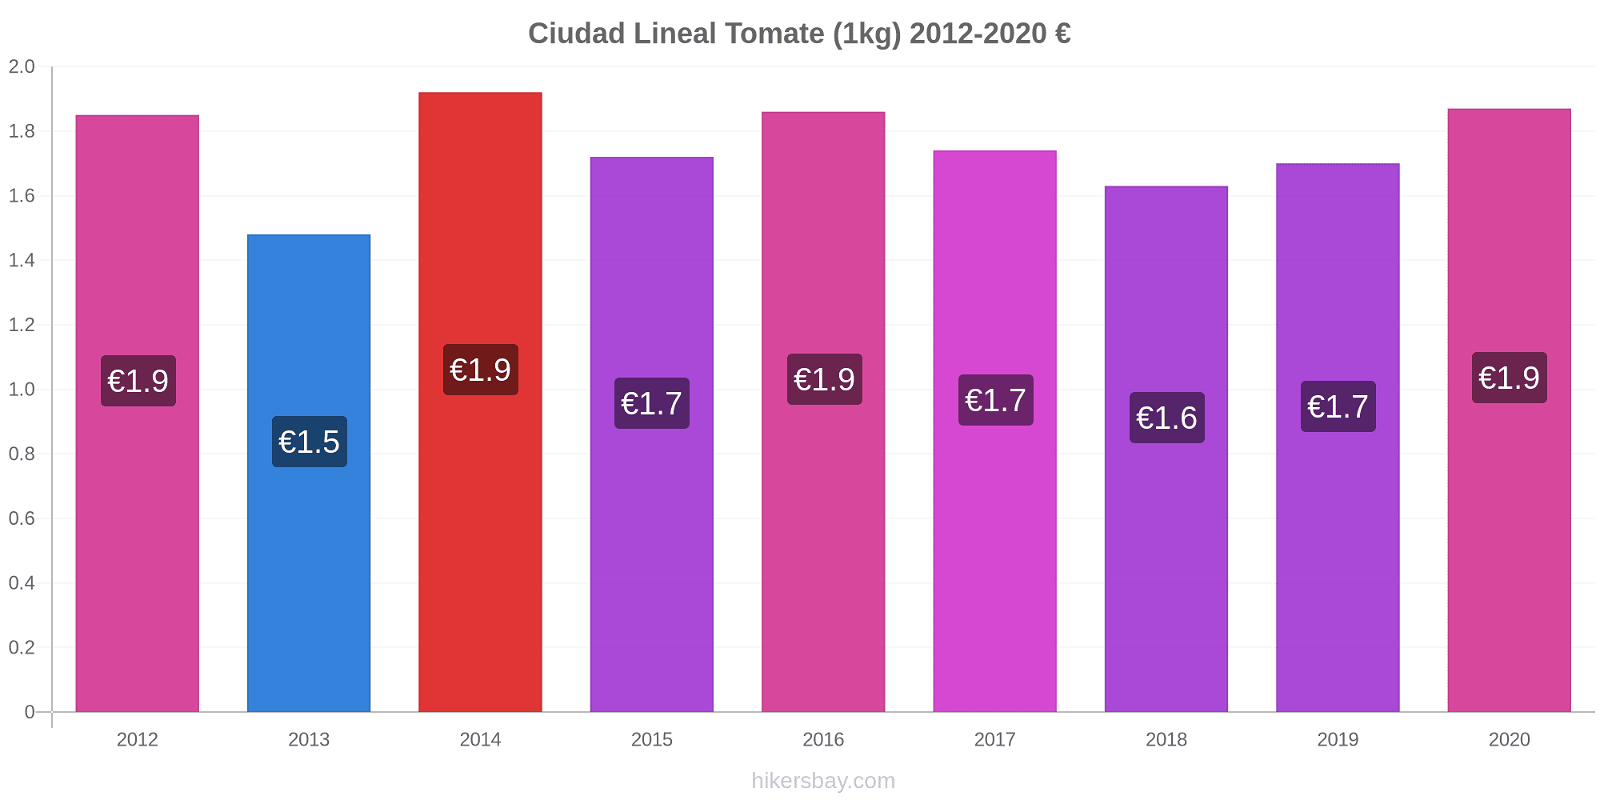 Ciudad Lineal cambios de precios Tomate (1kg) hikersbay.com